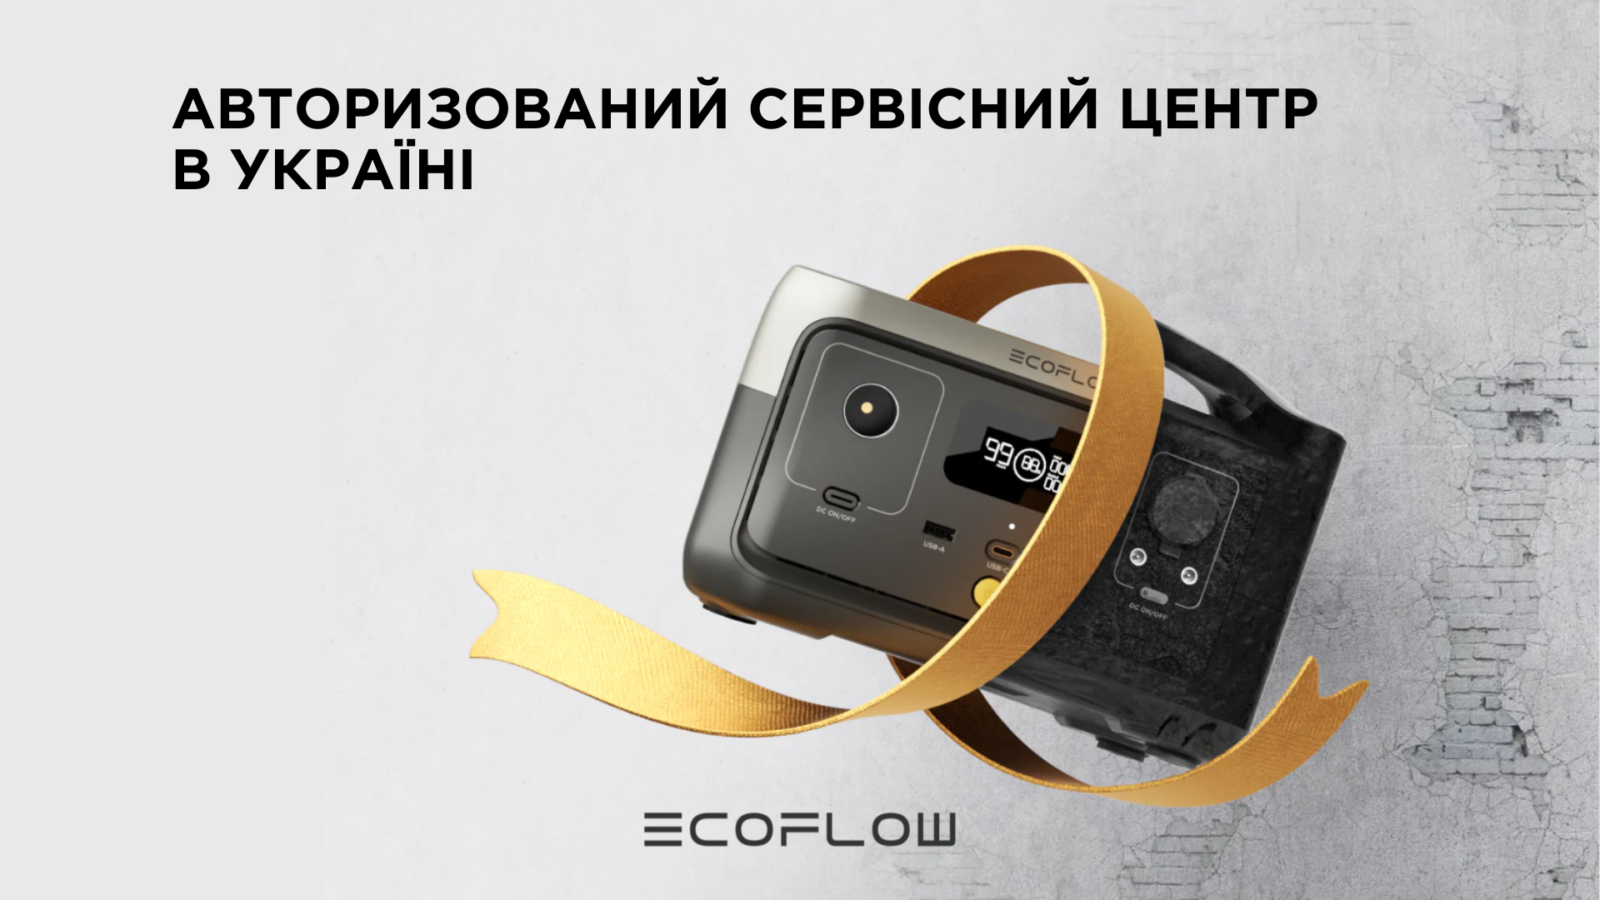 Робимо процес покупки енергоефективних товарів надійним та безпечним – офіційна гарантія та технічна підтримка клієнтів EcoFlow!